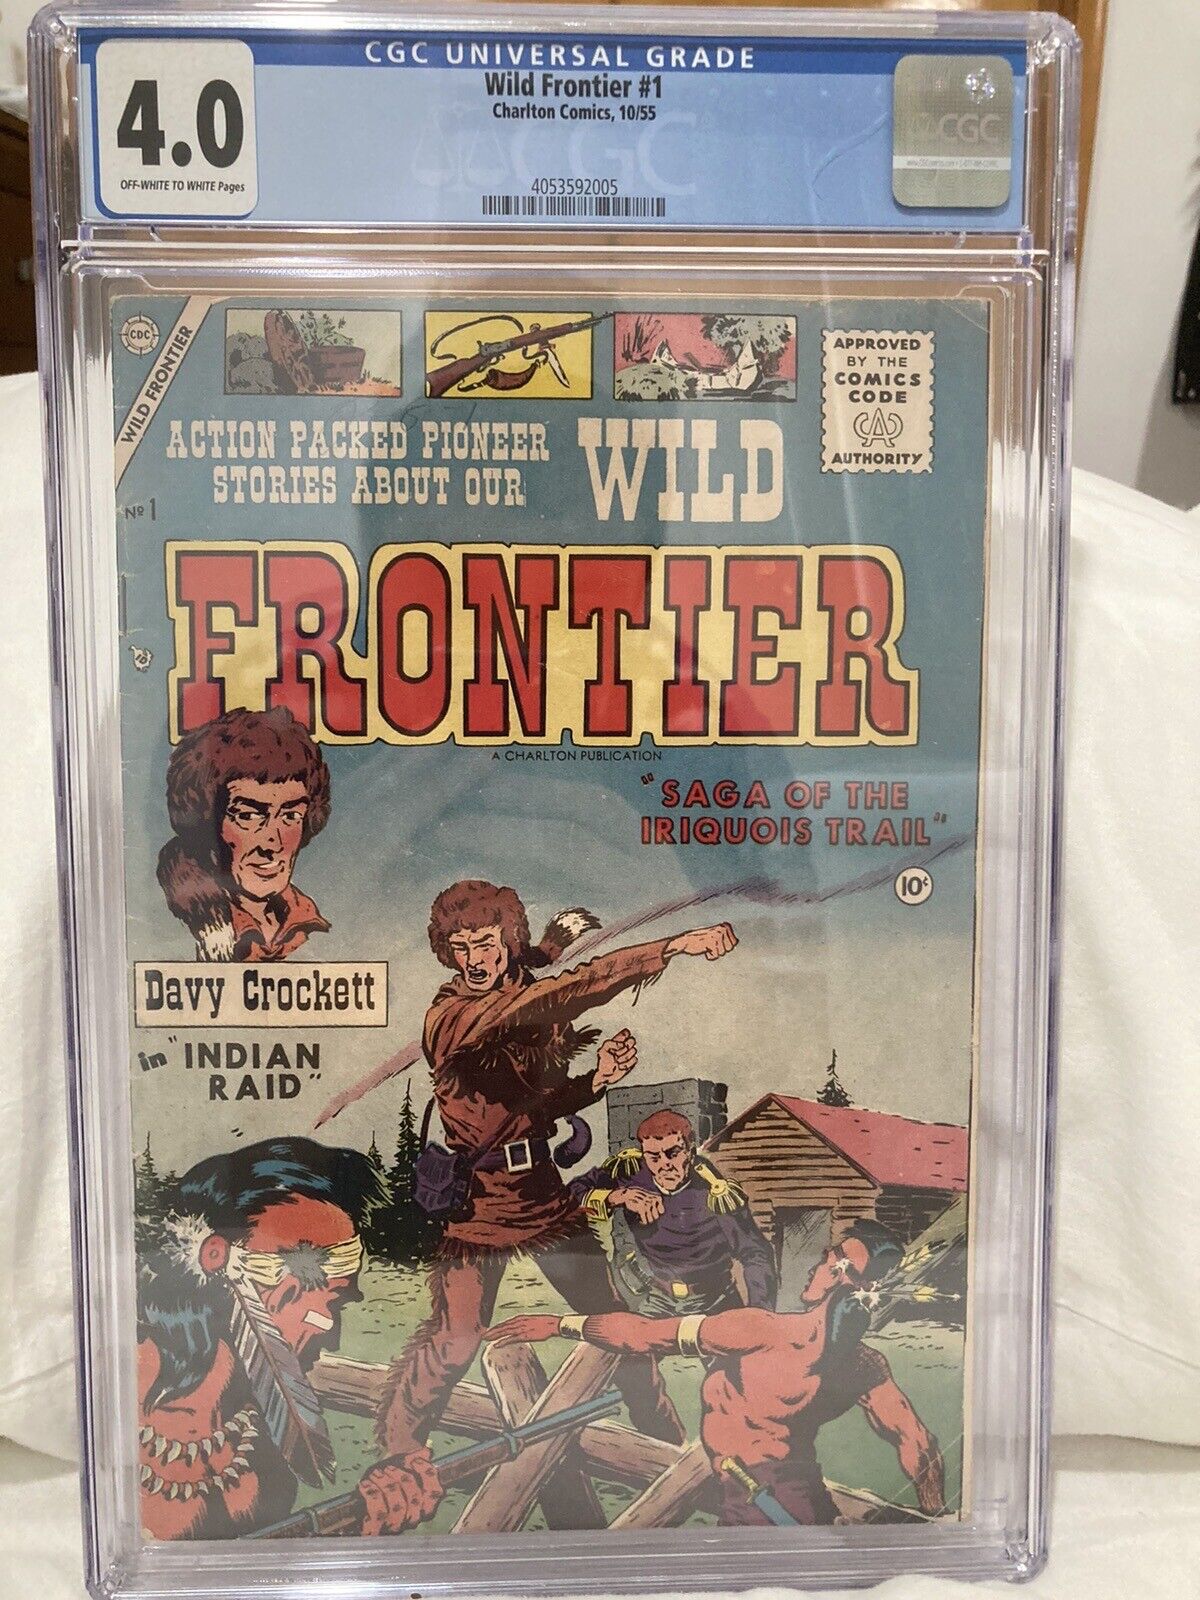 Wild Frontier #1 (October 1955, Charlton Comics) Golden Age, CGC Graded (4.0)